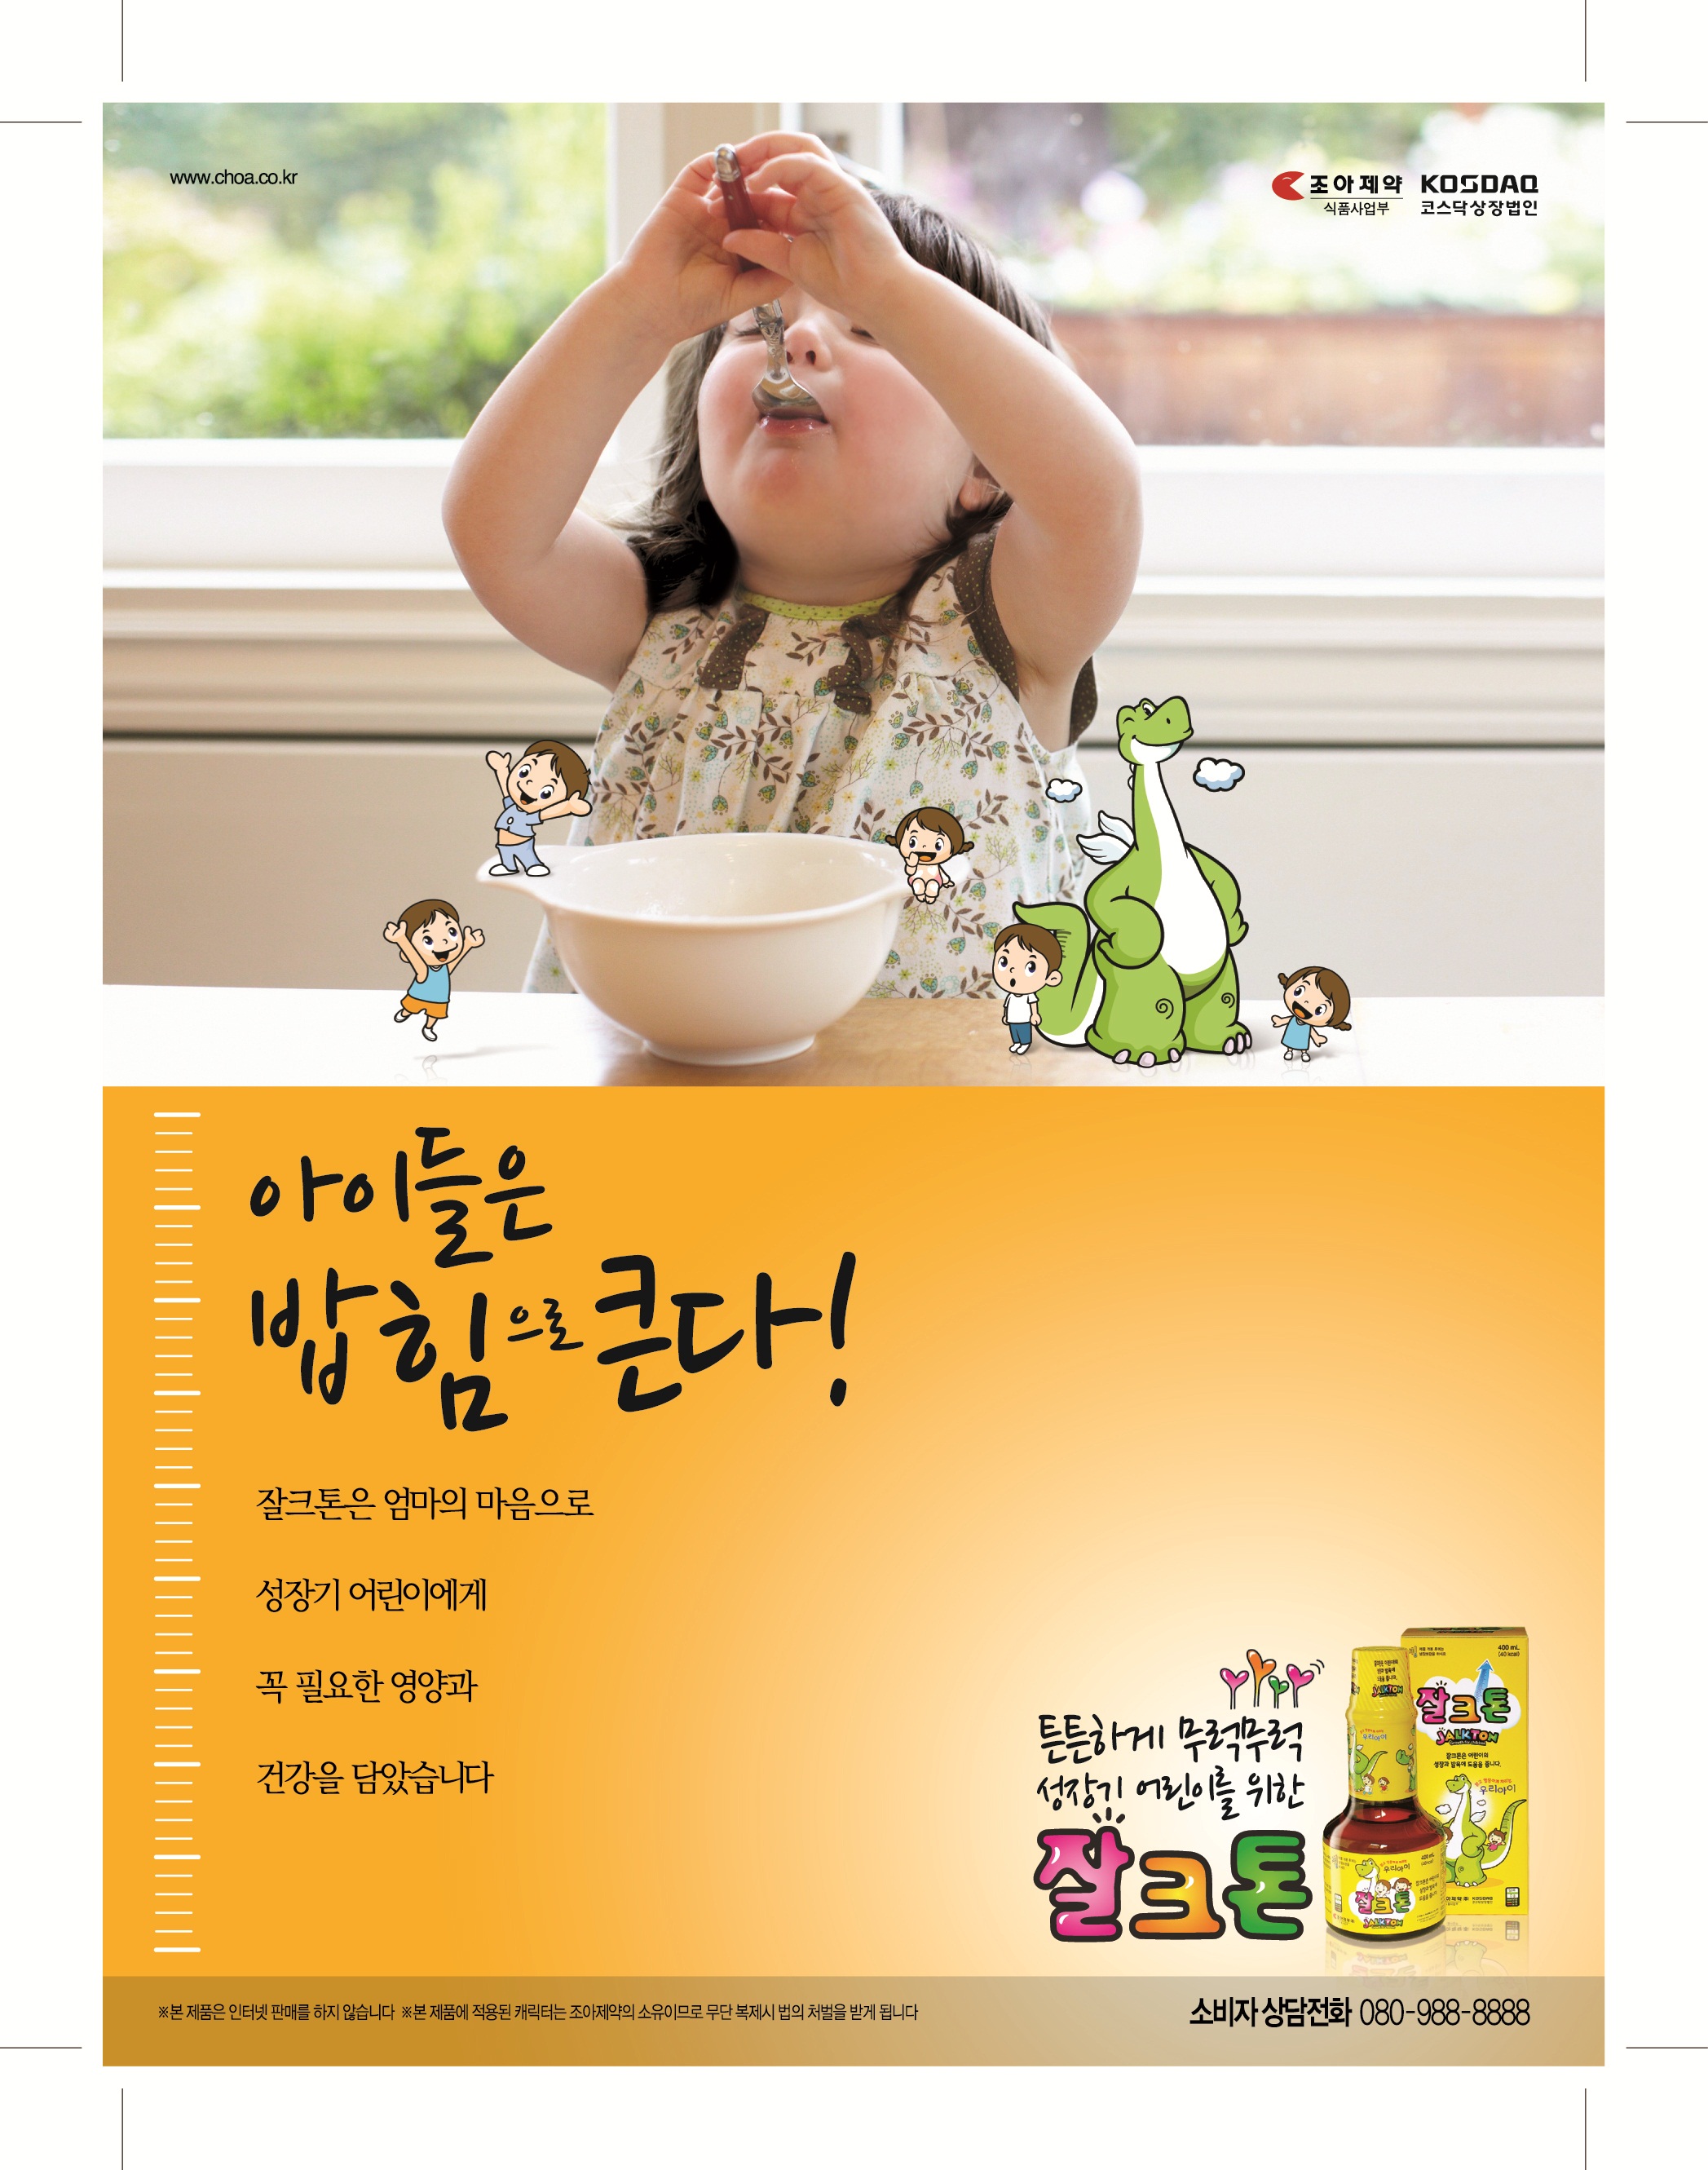 2012 잘크톤-육아지 지면광고